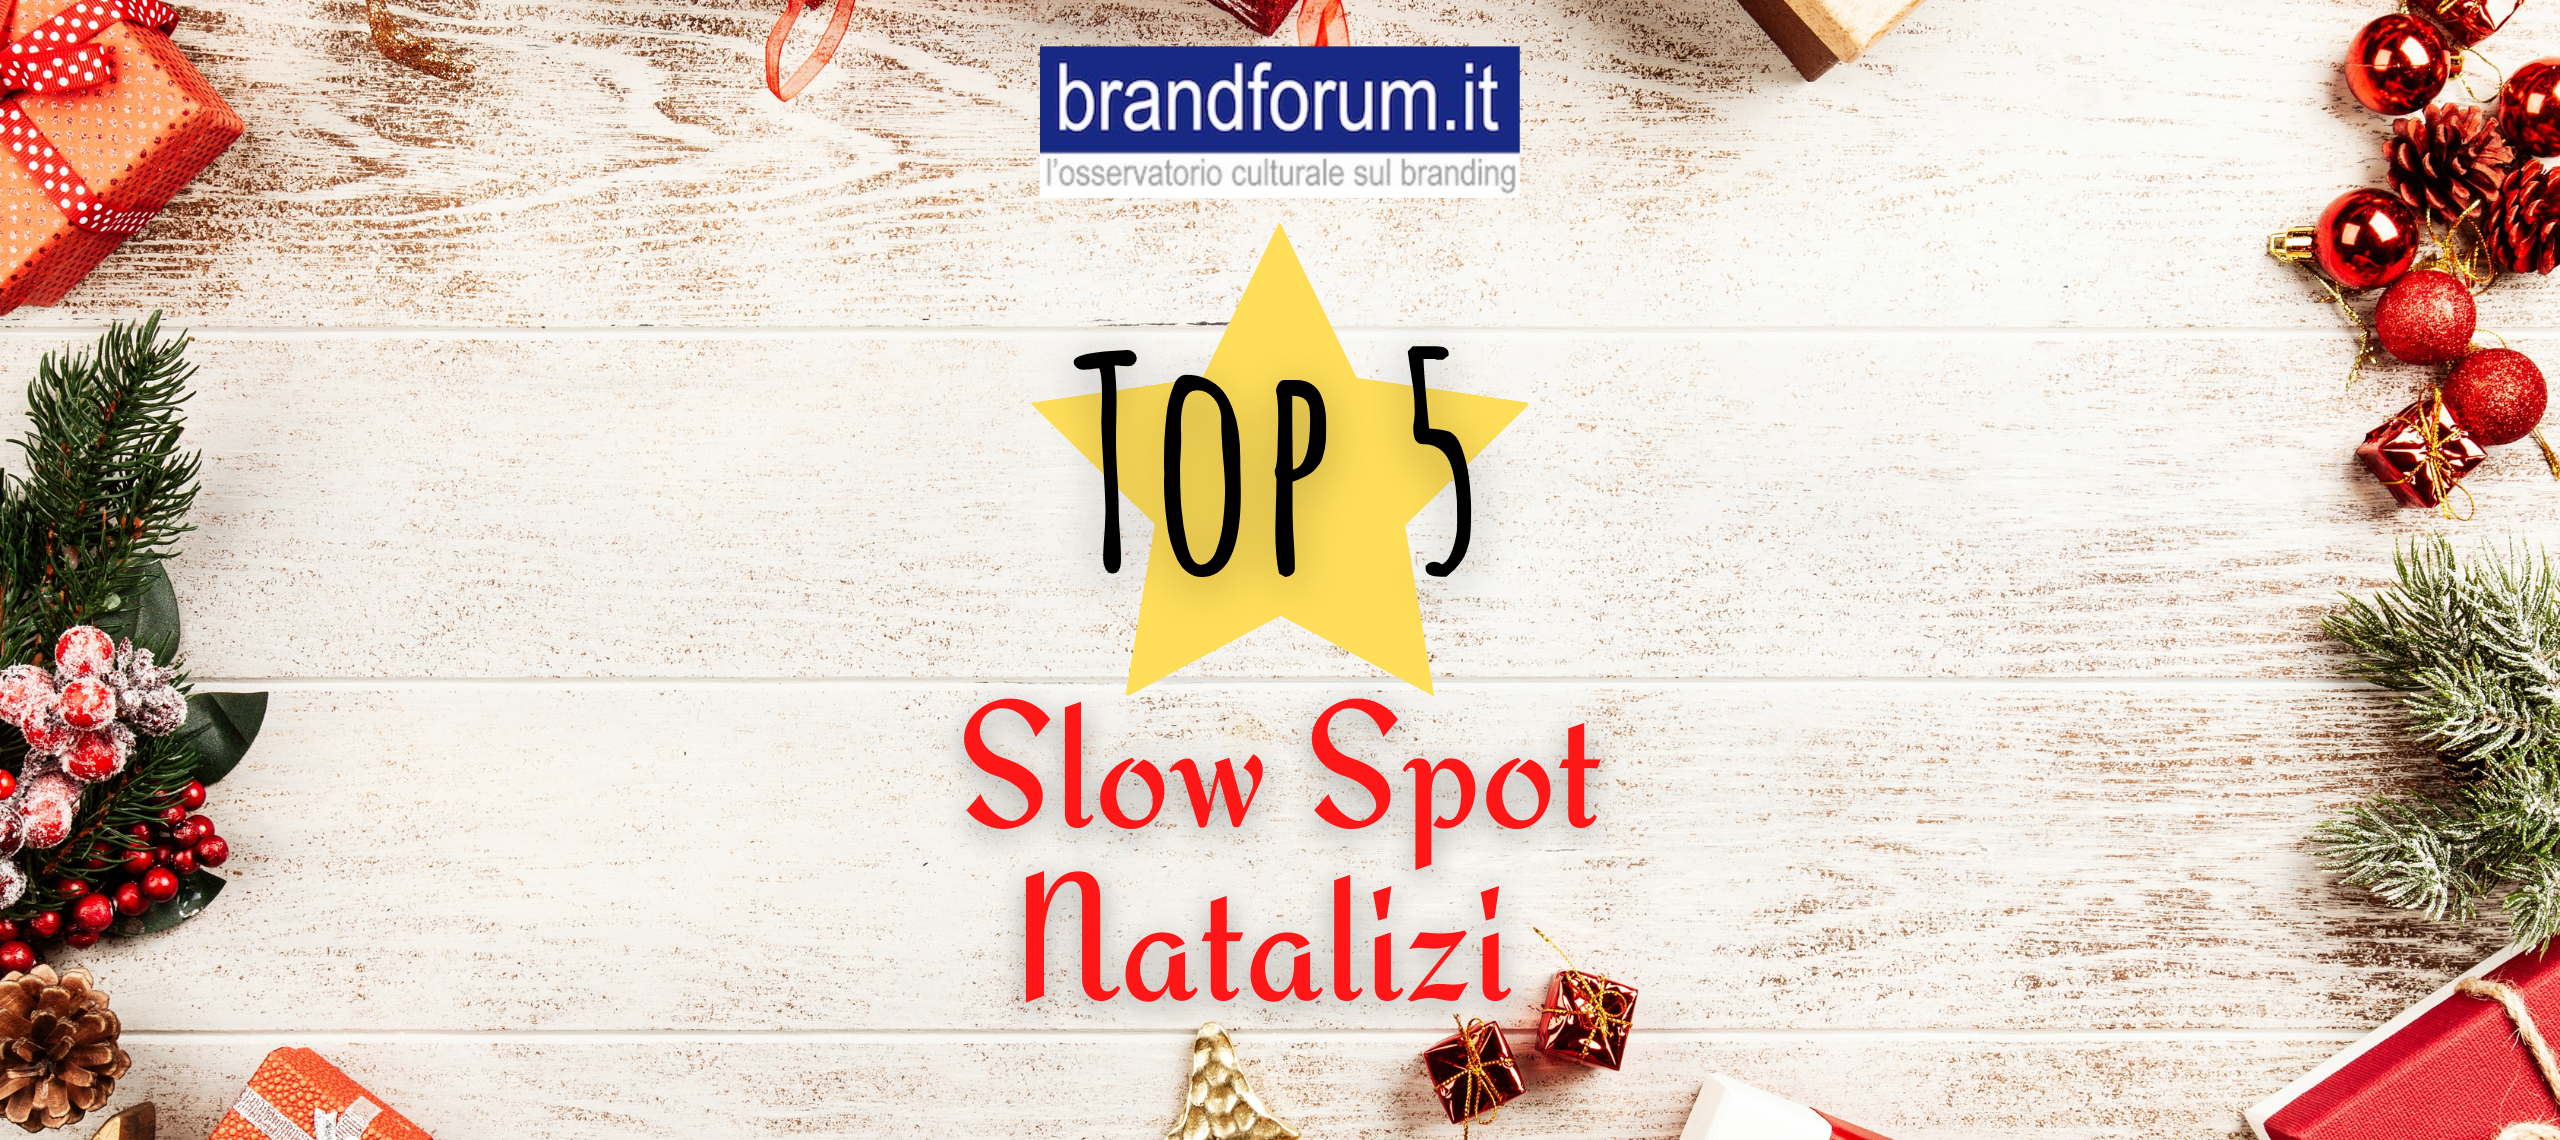 Slow spot natalizi: aiutaci a scegliere la Top 5 di Brandforum!